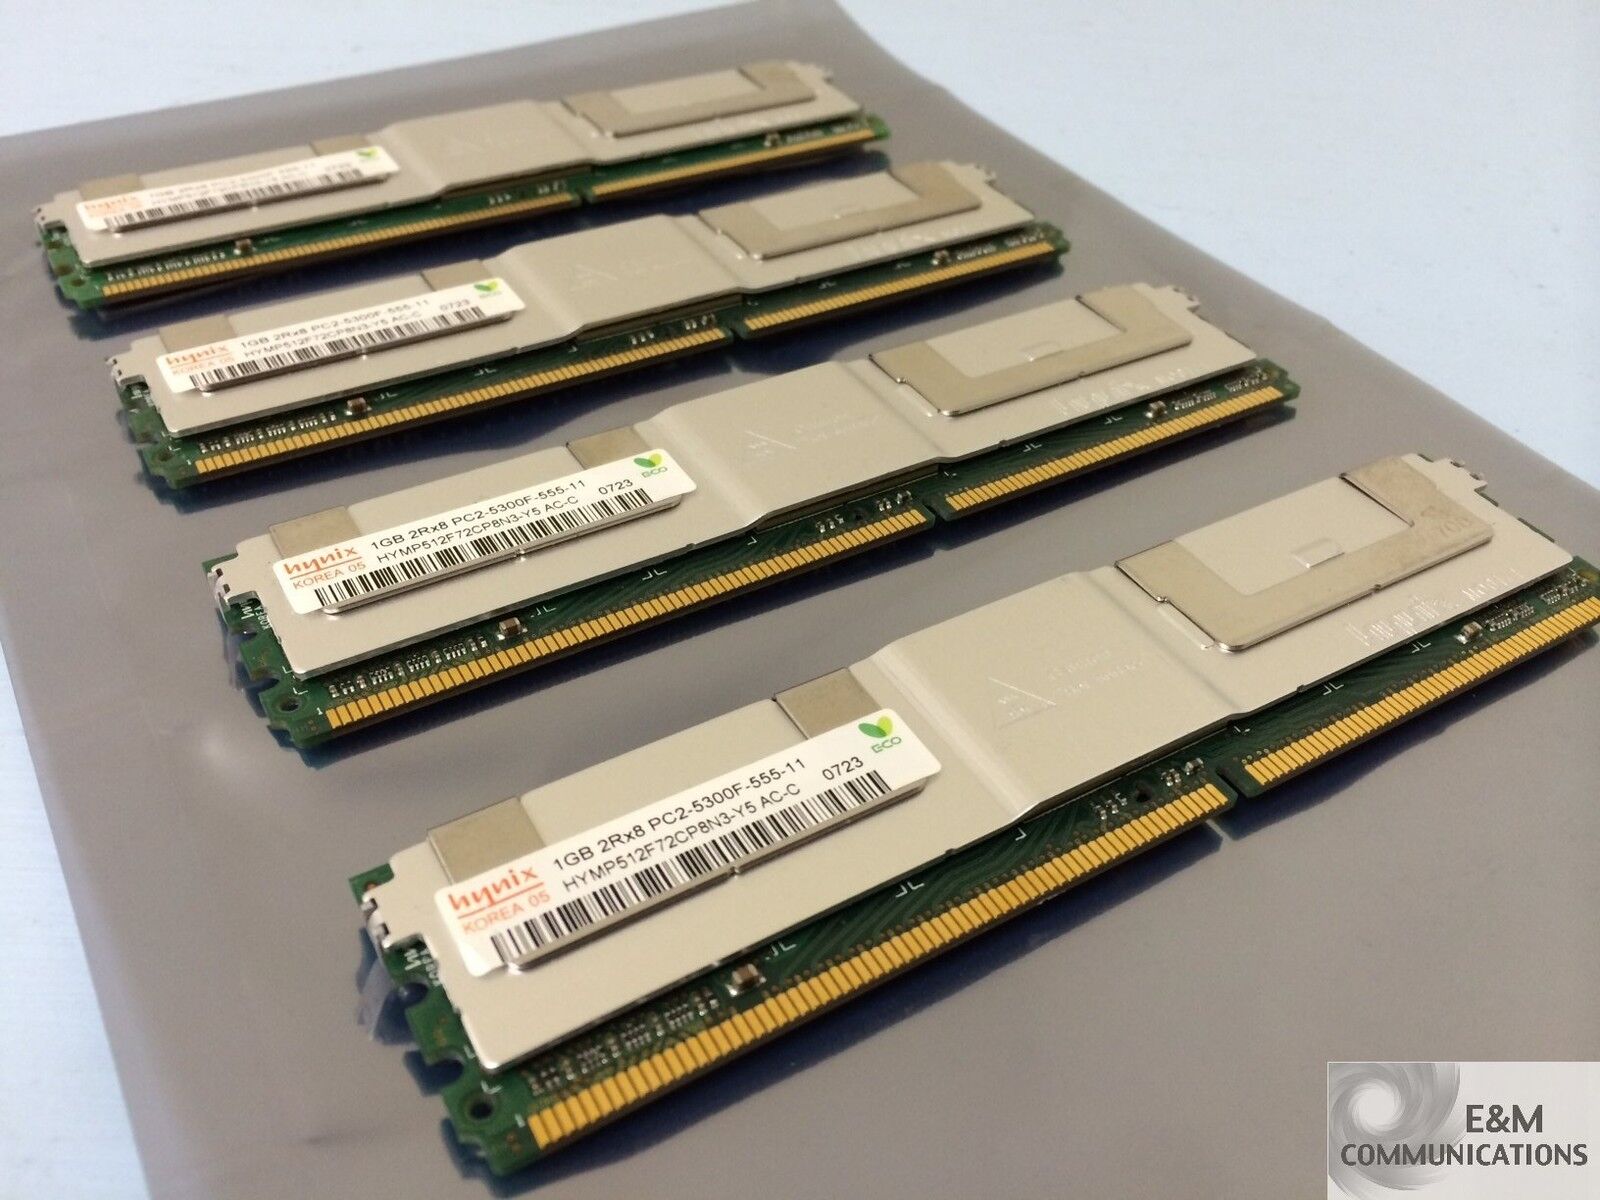 LOT OF 4 HYNIX 398706-051 4x1GB (4GB) PC2-5300F DDR2 667MHZ DIMM SERVER MEMORY